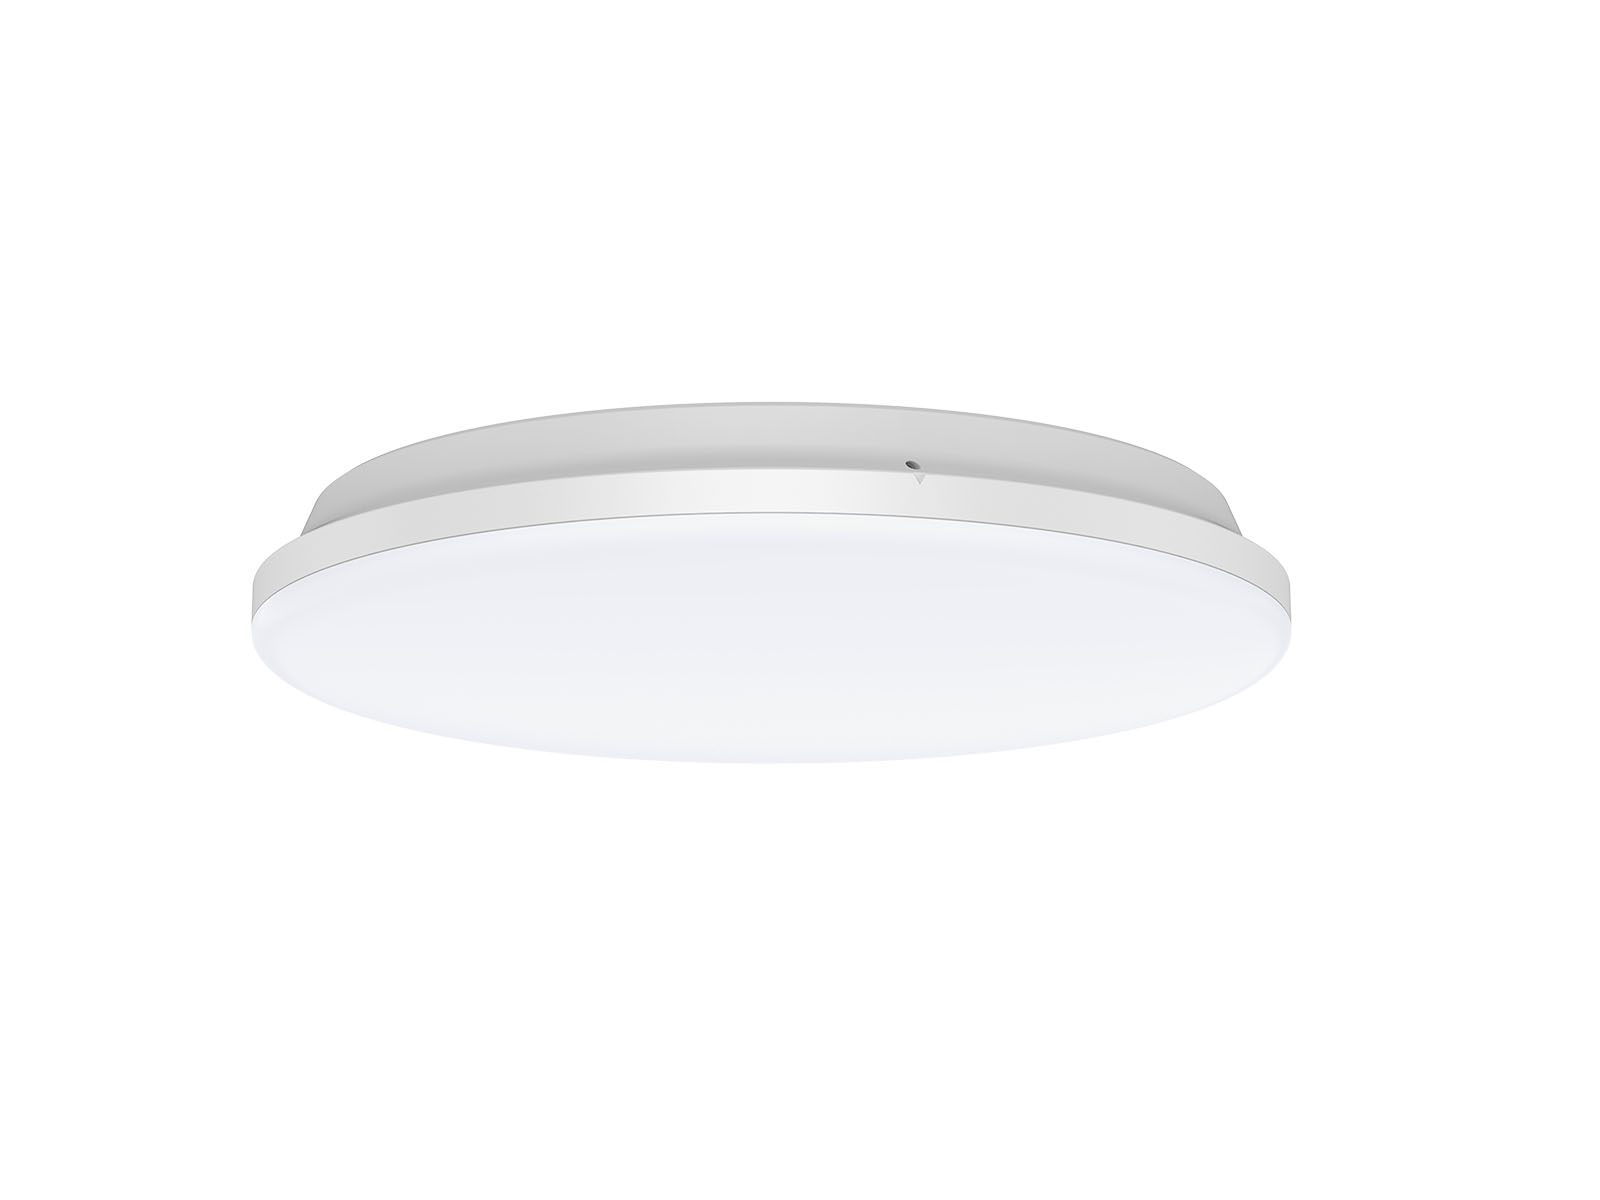 IP54 waterproof LED Ceiling Light